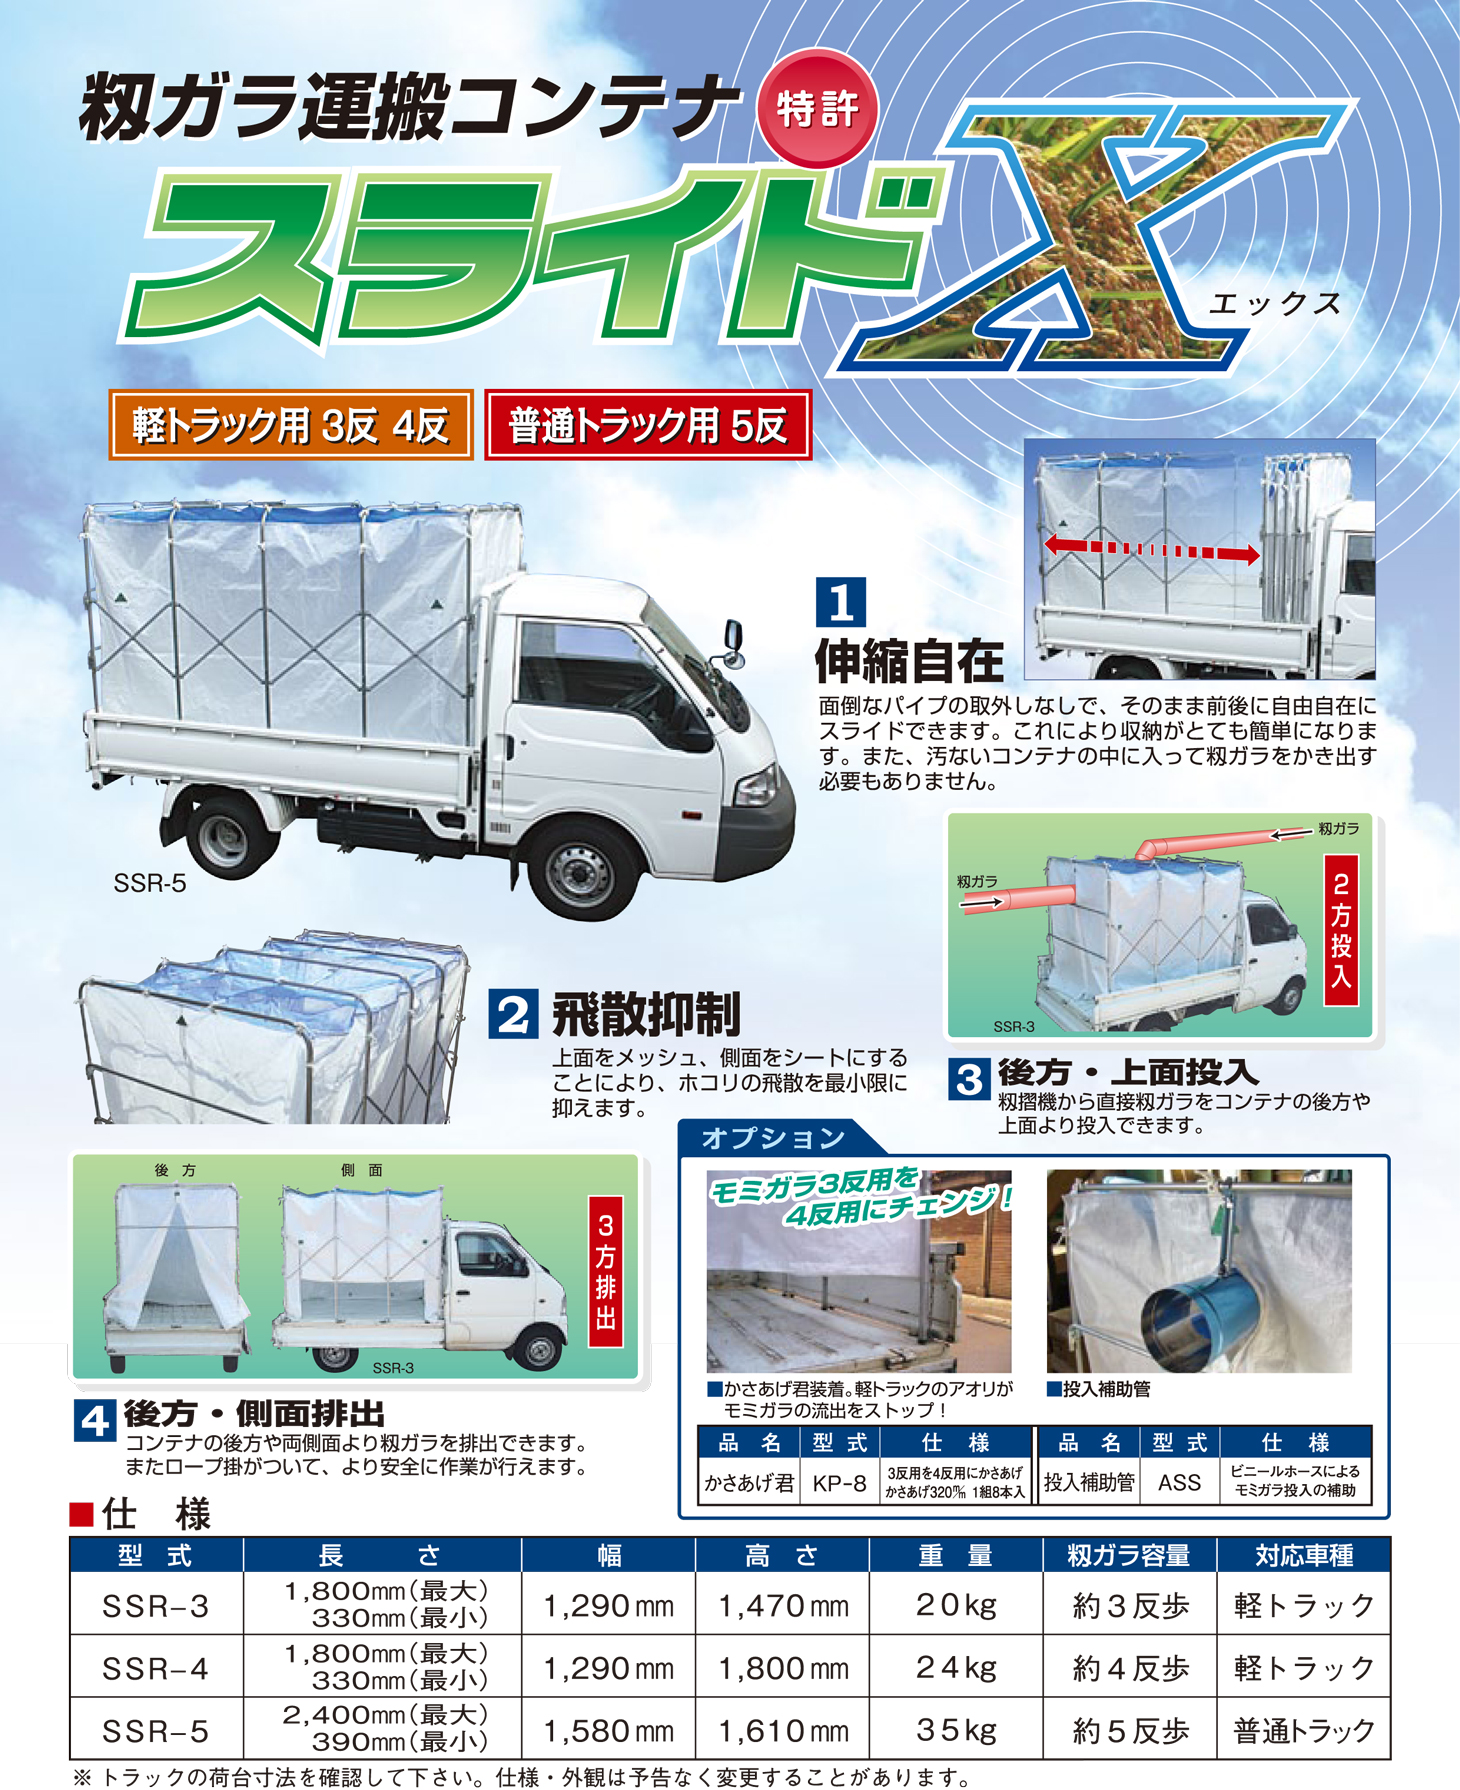 定期入れの AZTEC ショップ笹川農機 籾ガラ運搬コンテナ スライドエックス SSR-6 普通トラック用 約6反歩